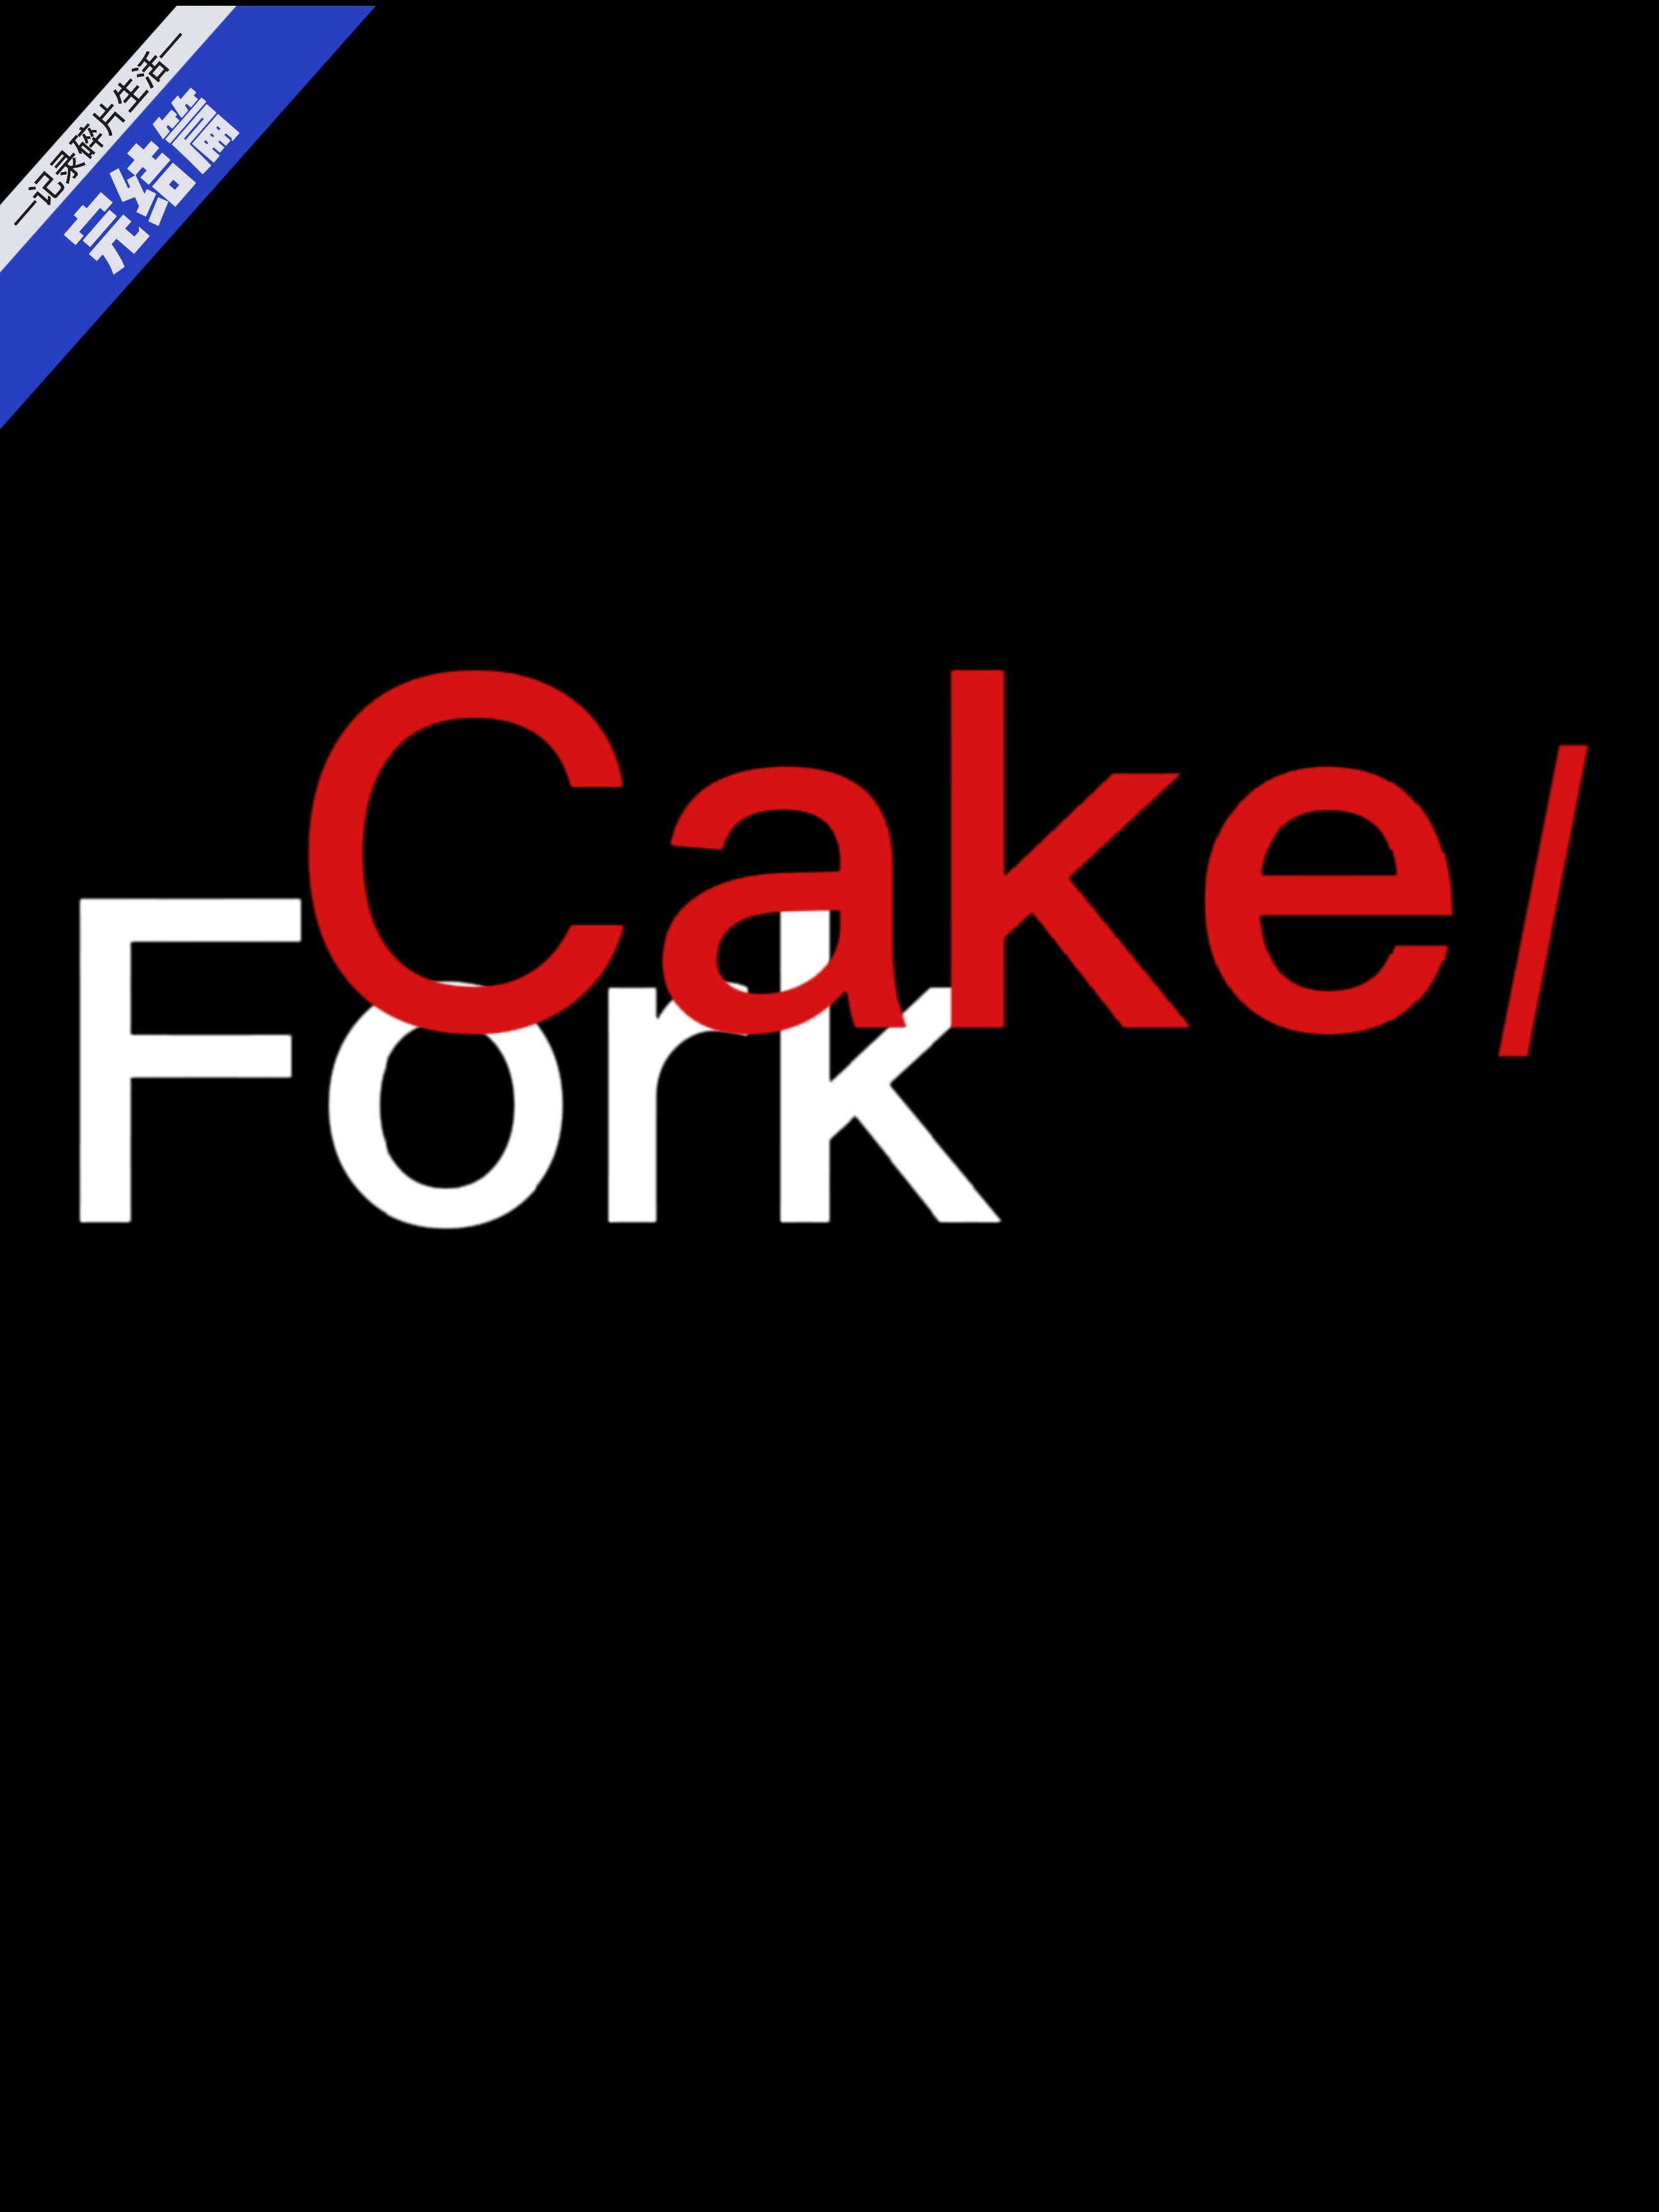 Fork&cake